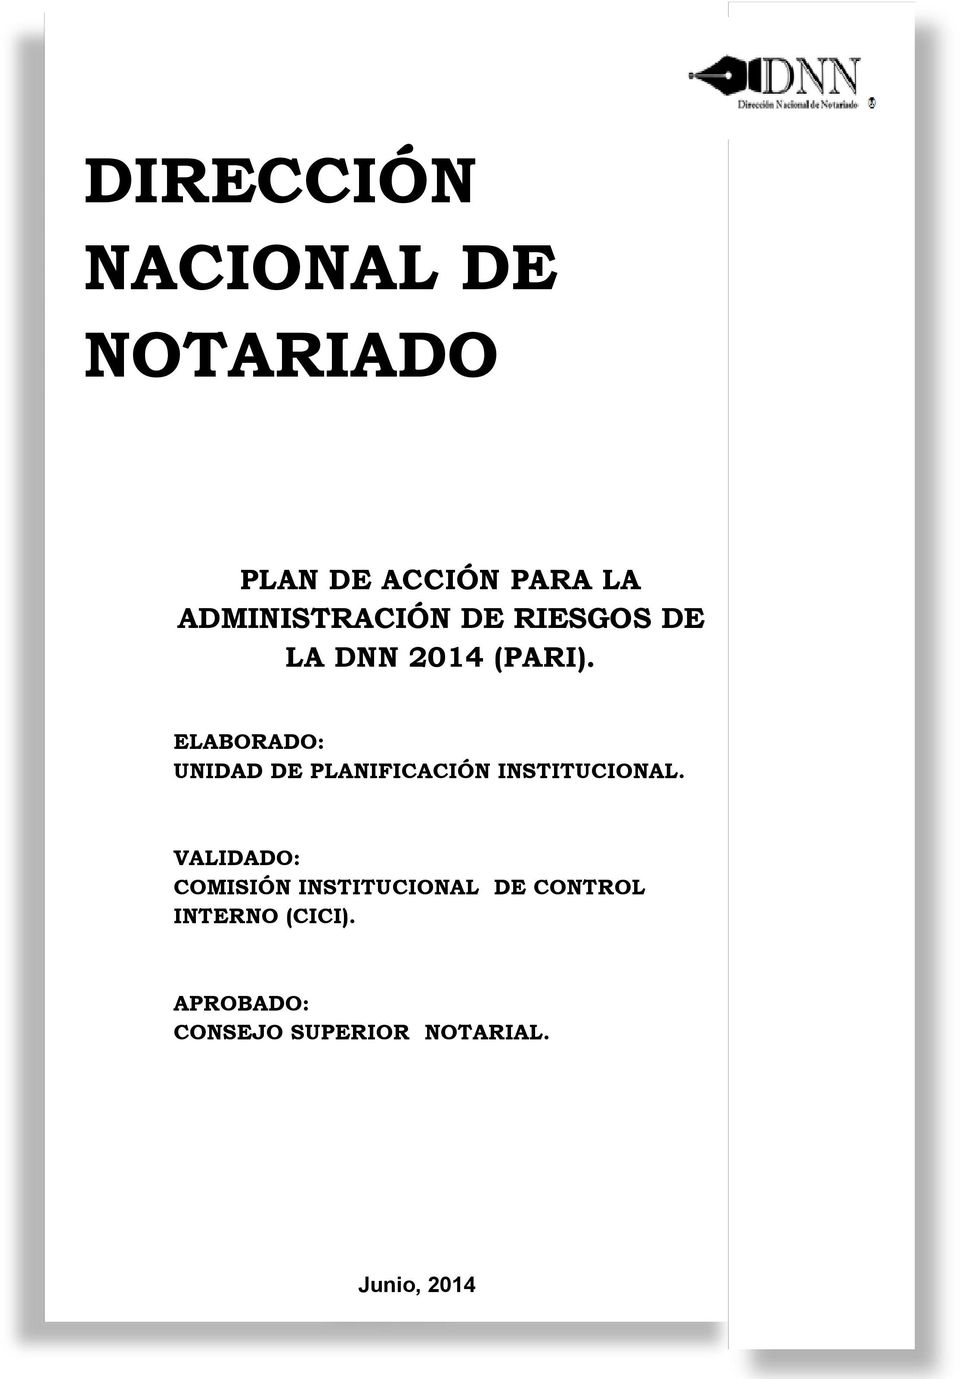 ELABORADO: UNIDAD DE PLANIFICACIÓN INSTITUCIONAL.